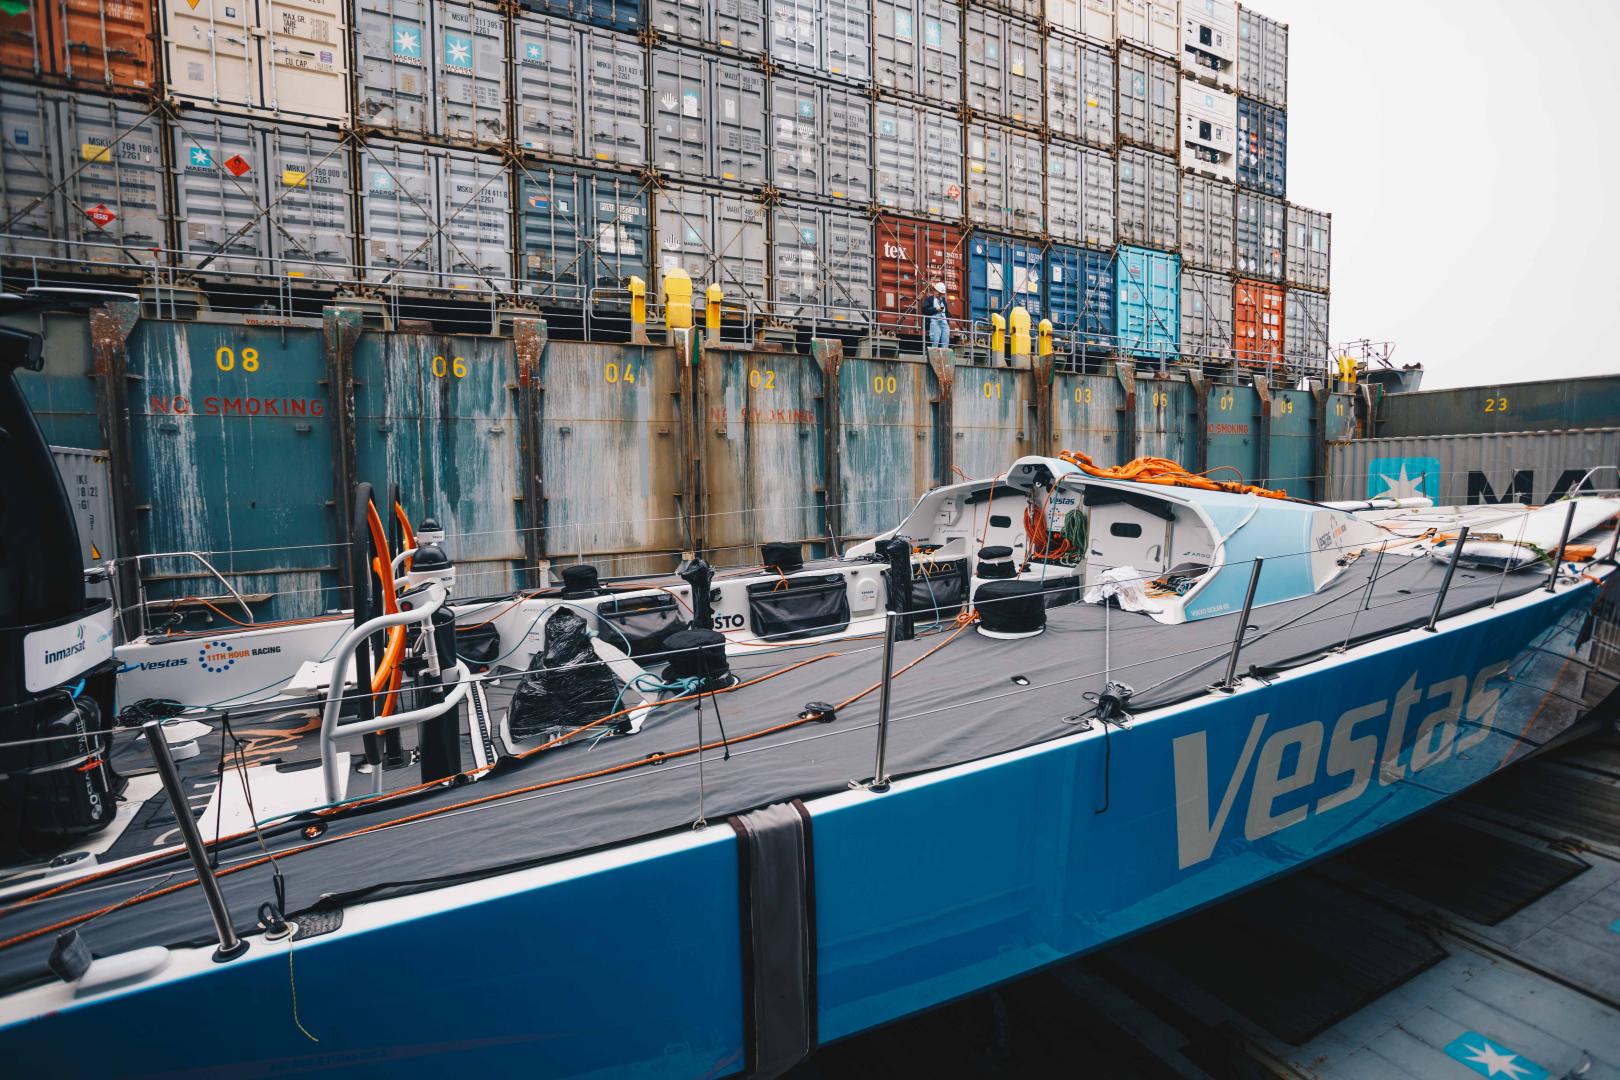 Vestas 11th Huor Racing ha confermato che non sarà possibile unirsi alla flotta per la Leg 6. La barca è su un cargo a Hong Kong per essere trasportata ad Auckland